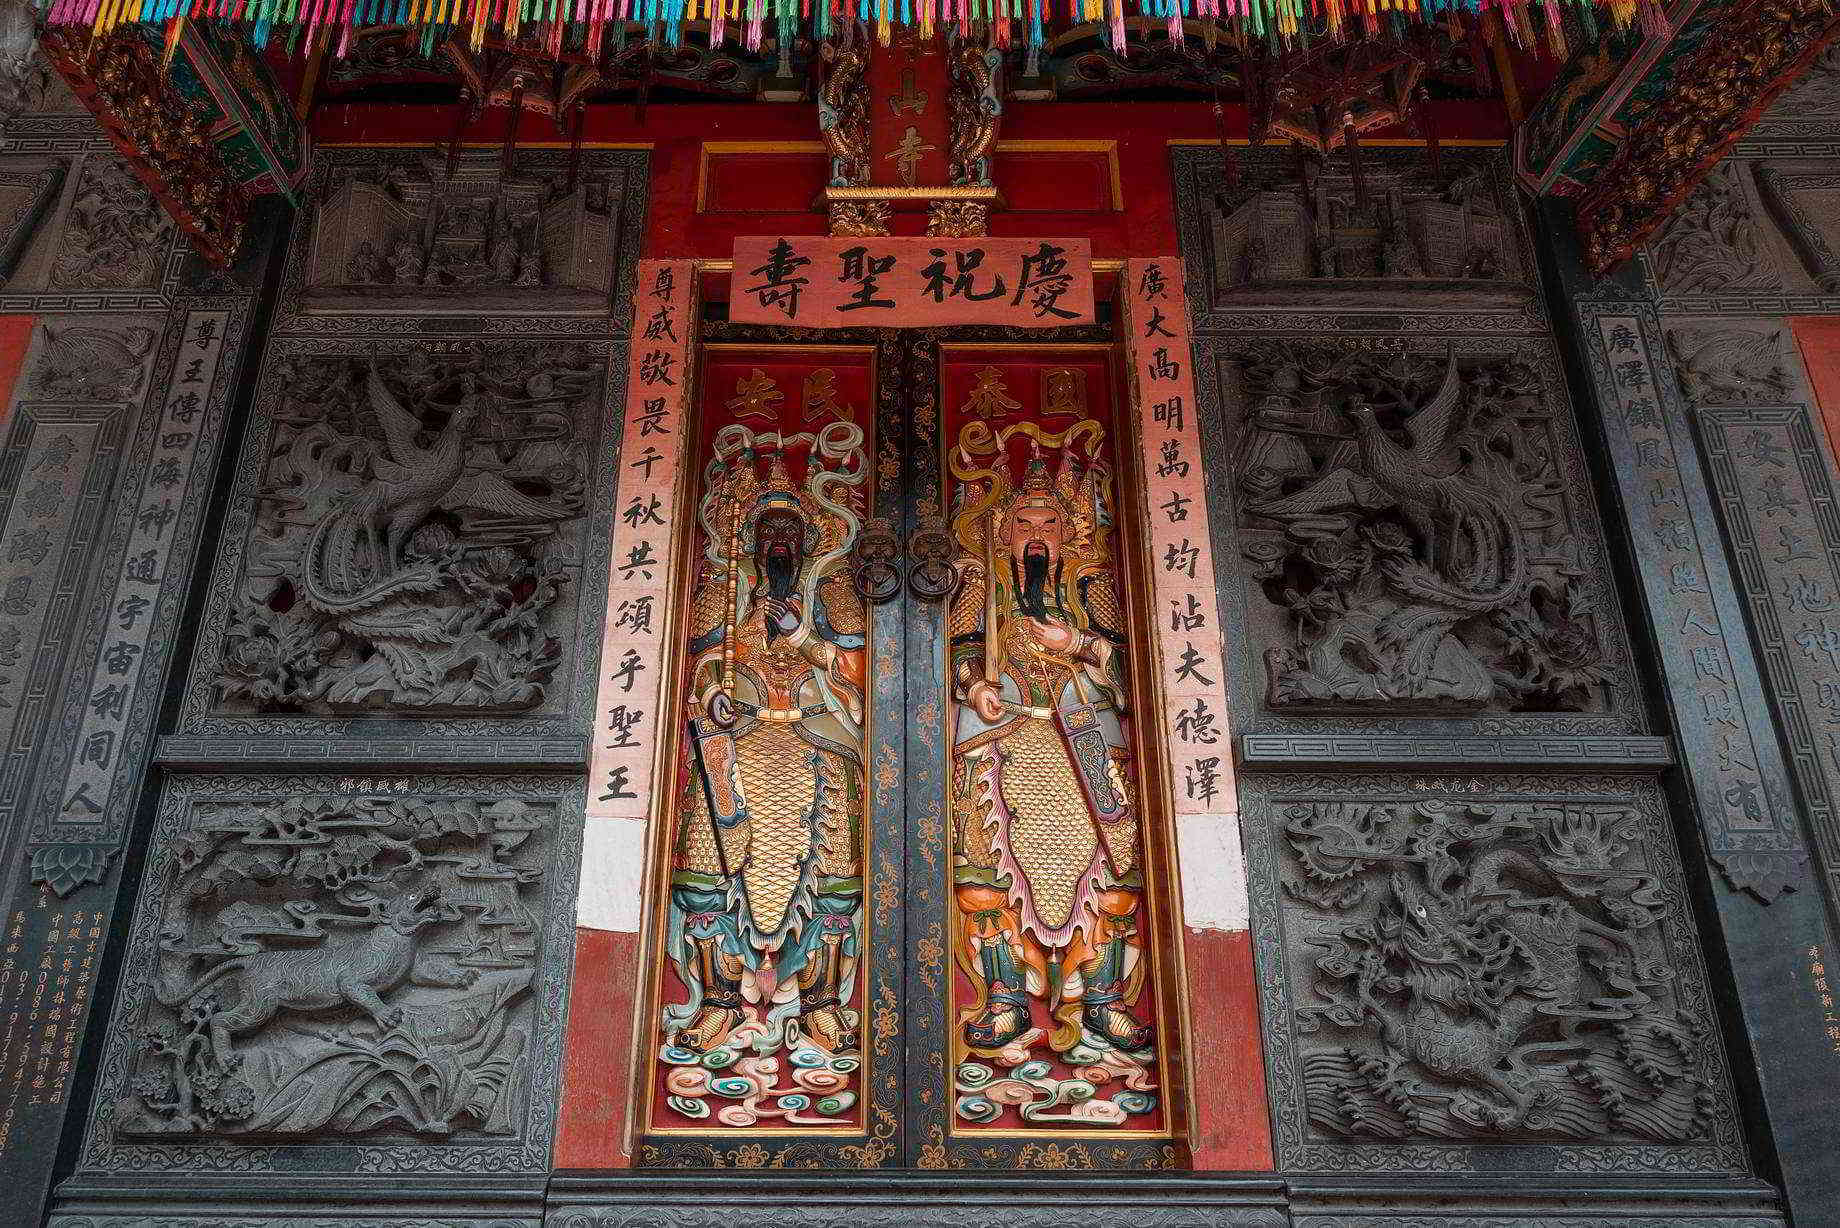 Kueh Seng Onn Temple